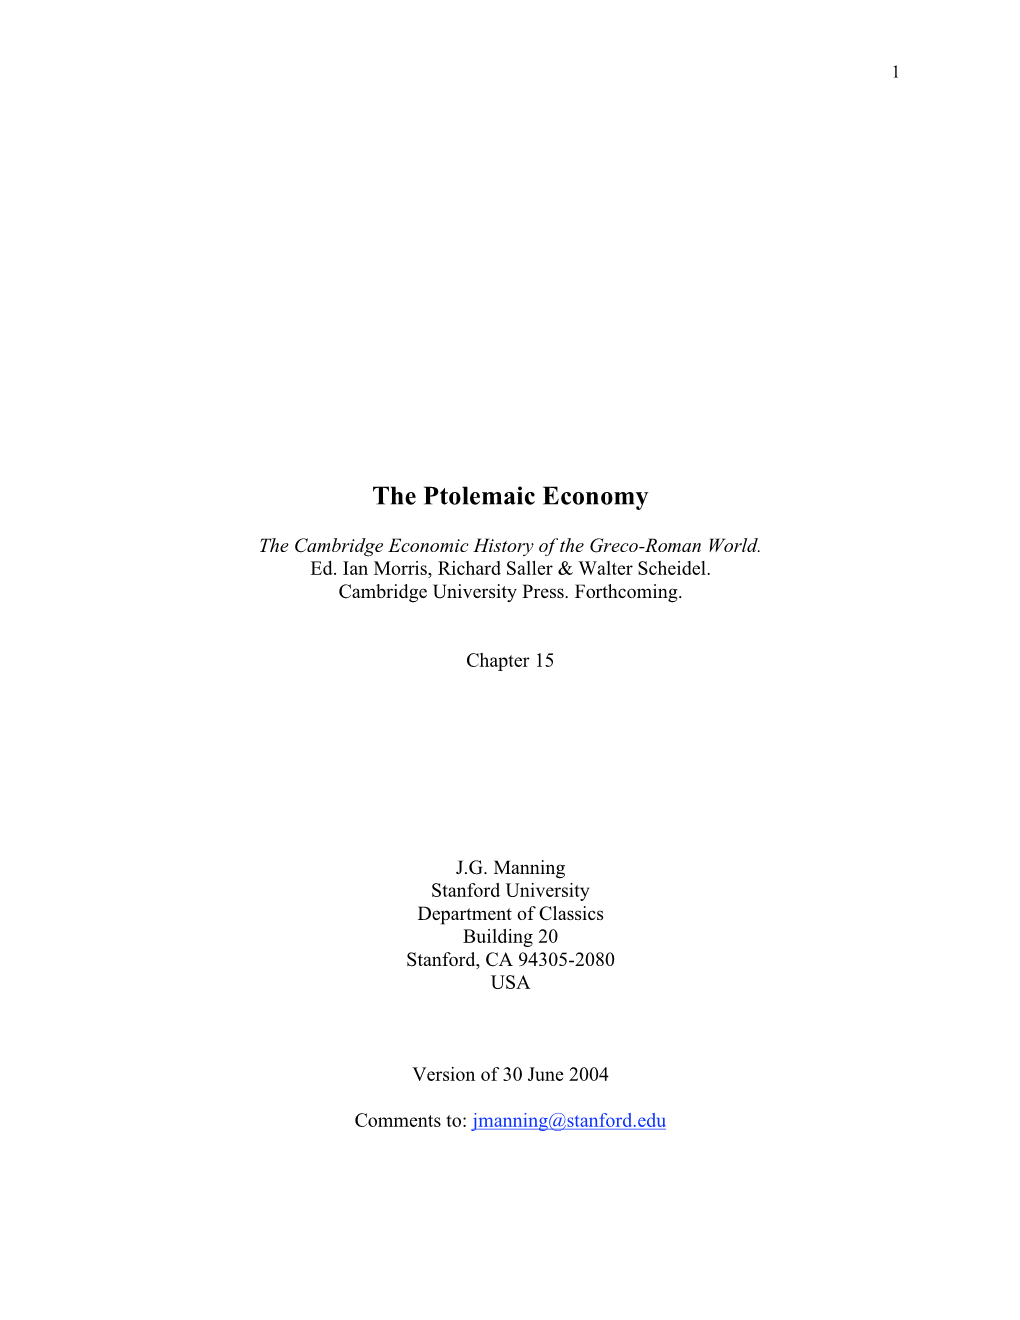 The Ptolemaic Economy